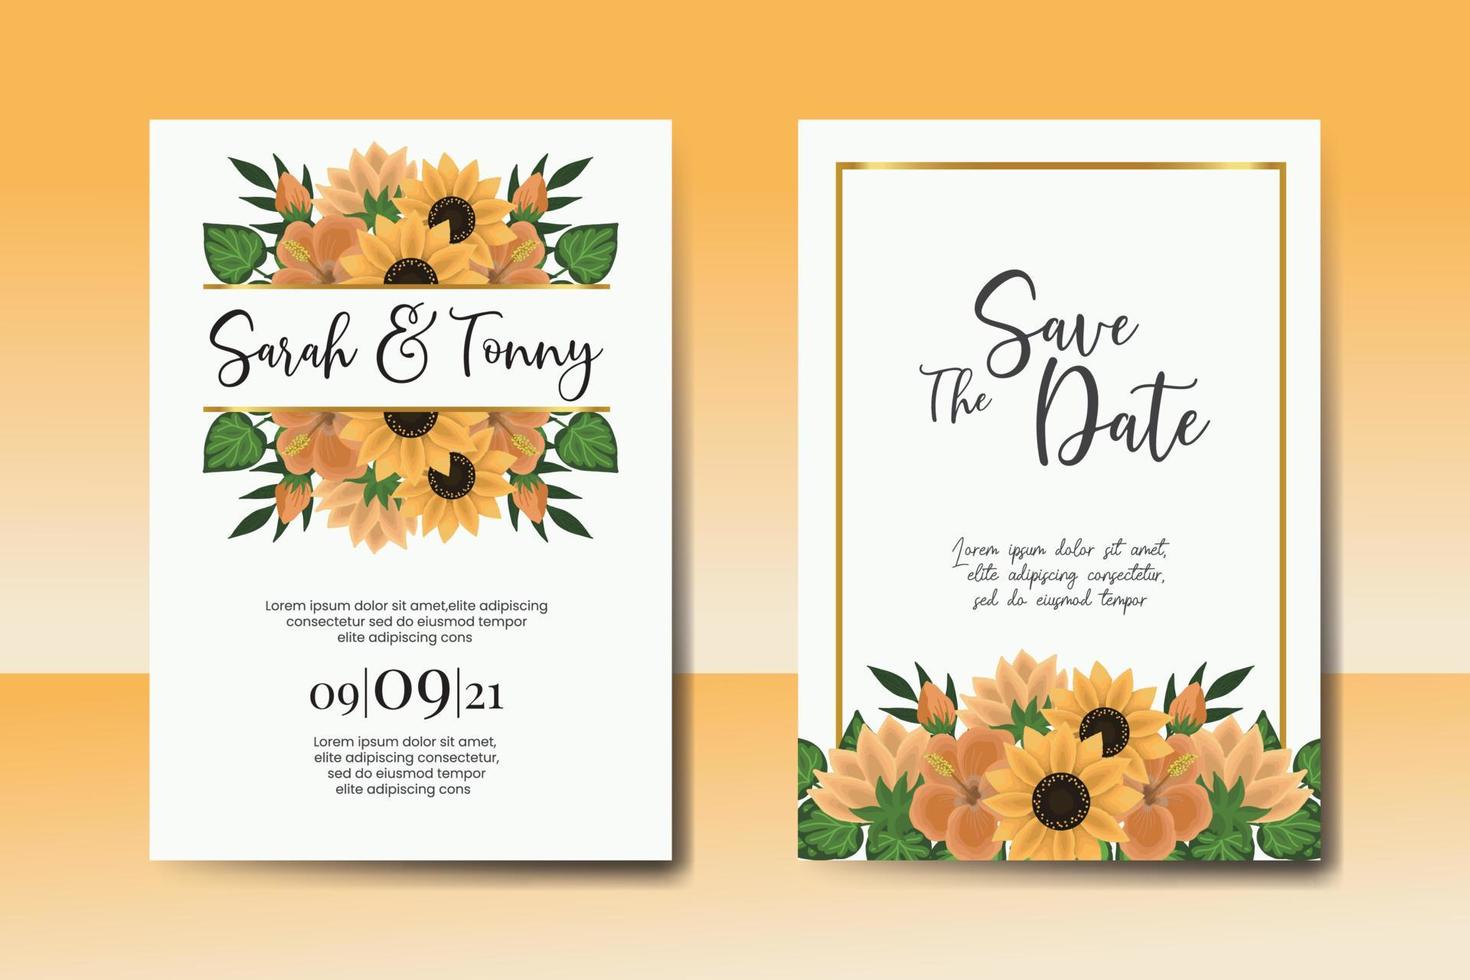 Boda invitación marco colocar, floral acuarela digital mano dibujado girasol diseño invitación tarjeta modelo vector